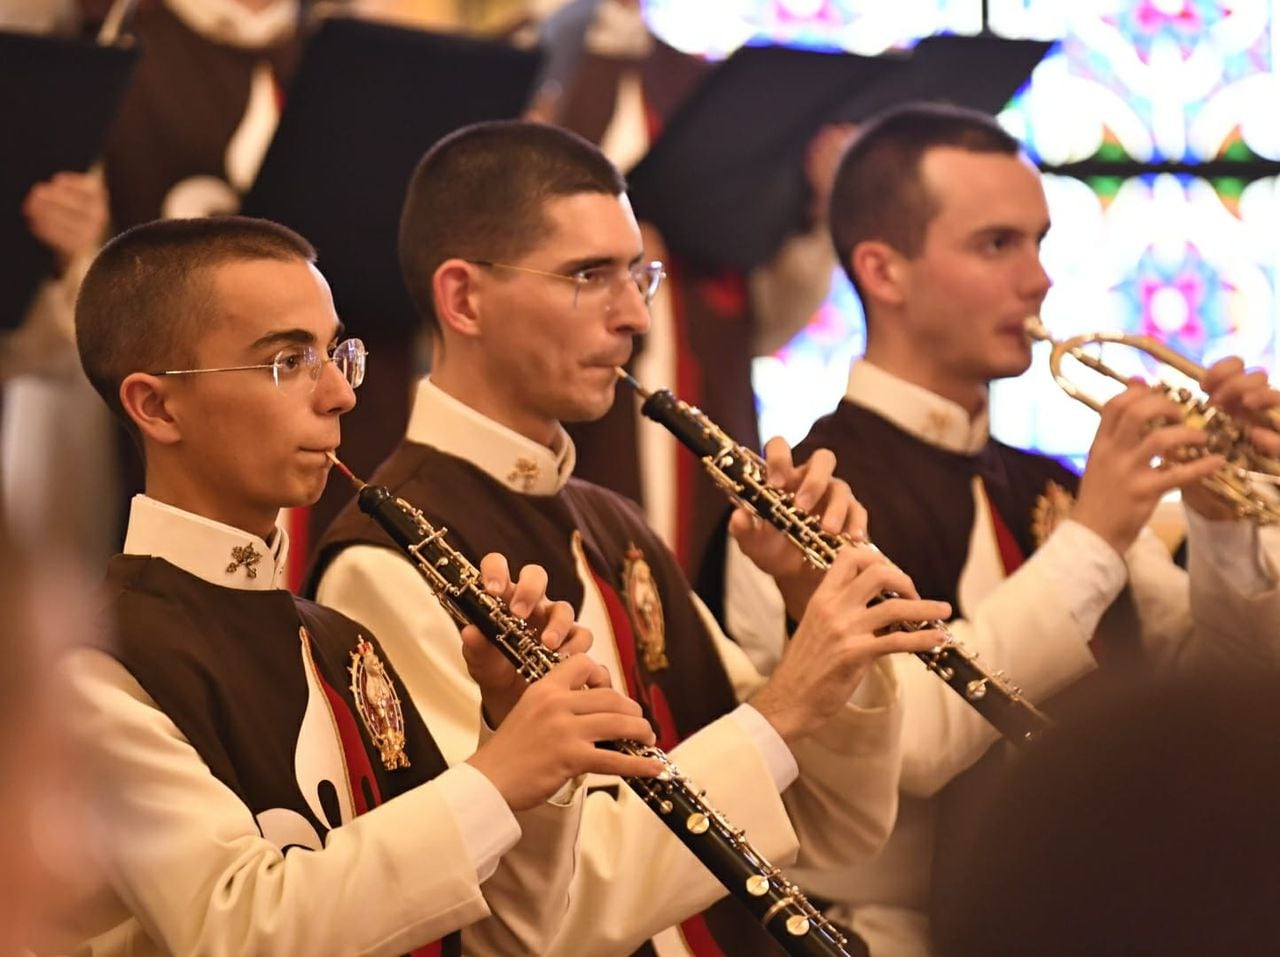 El mejor Coro Gregoriano de América -y uno de los mejores del mundo- quienes además interpretan la polifonía sacra.